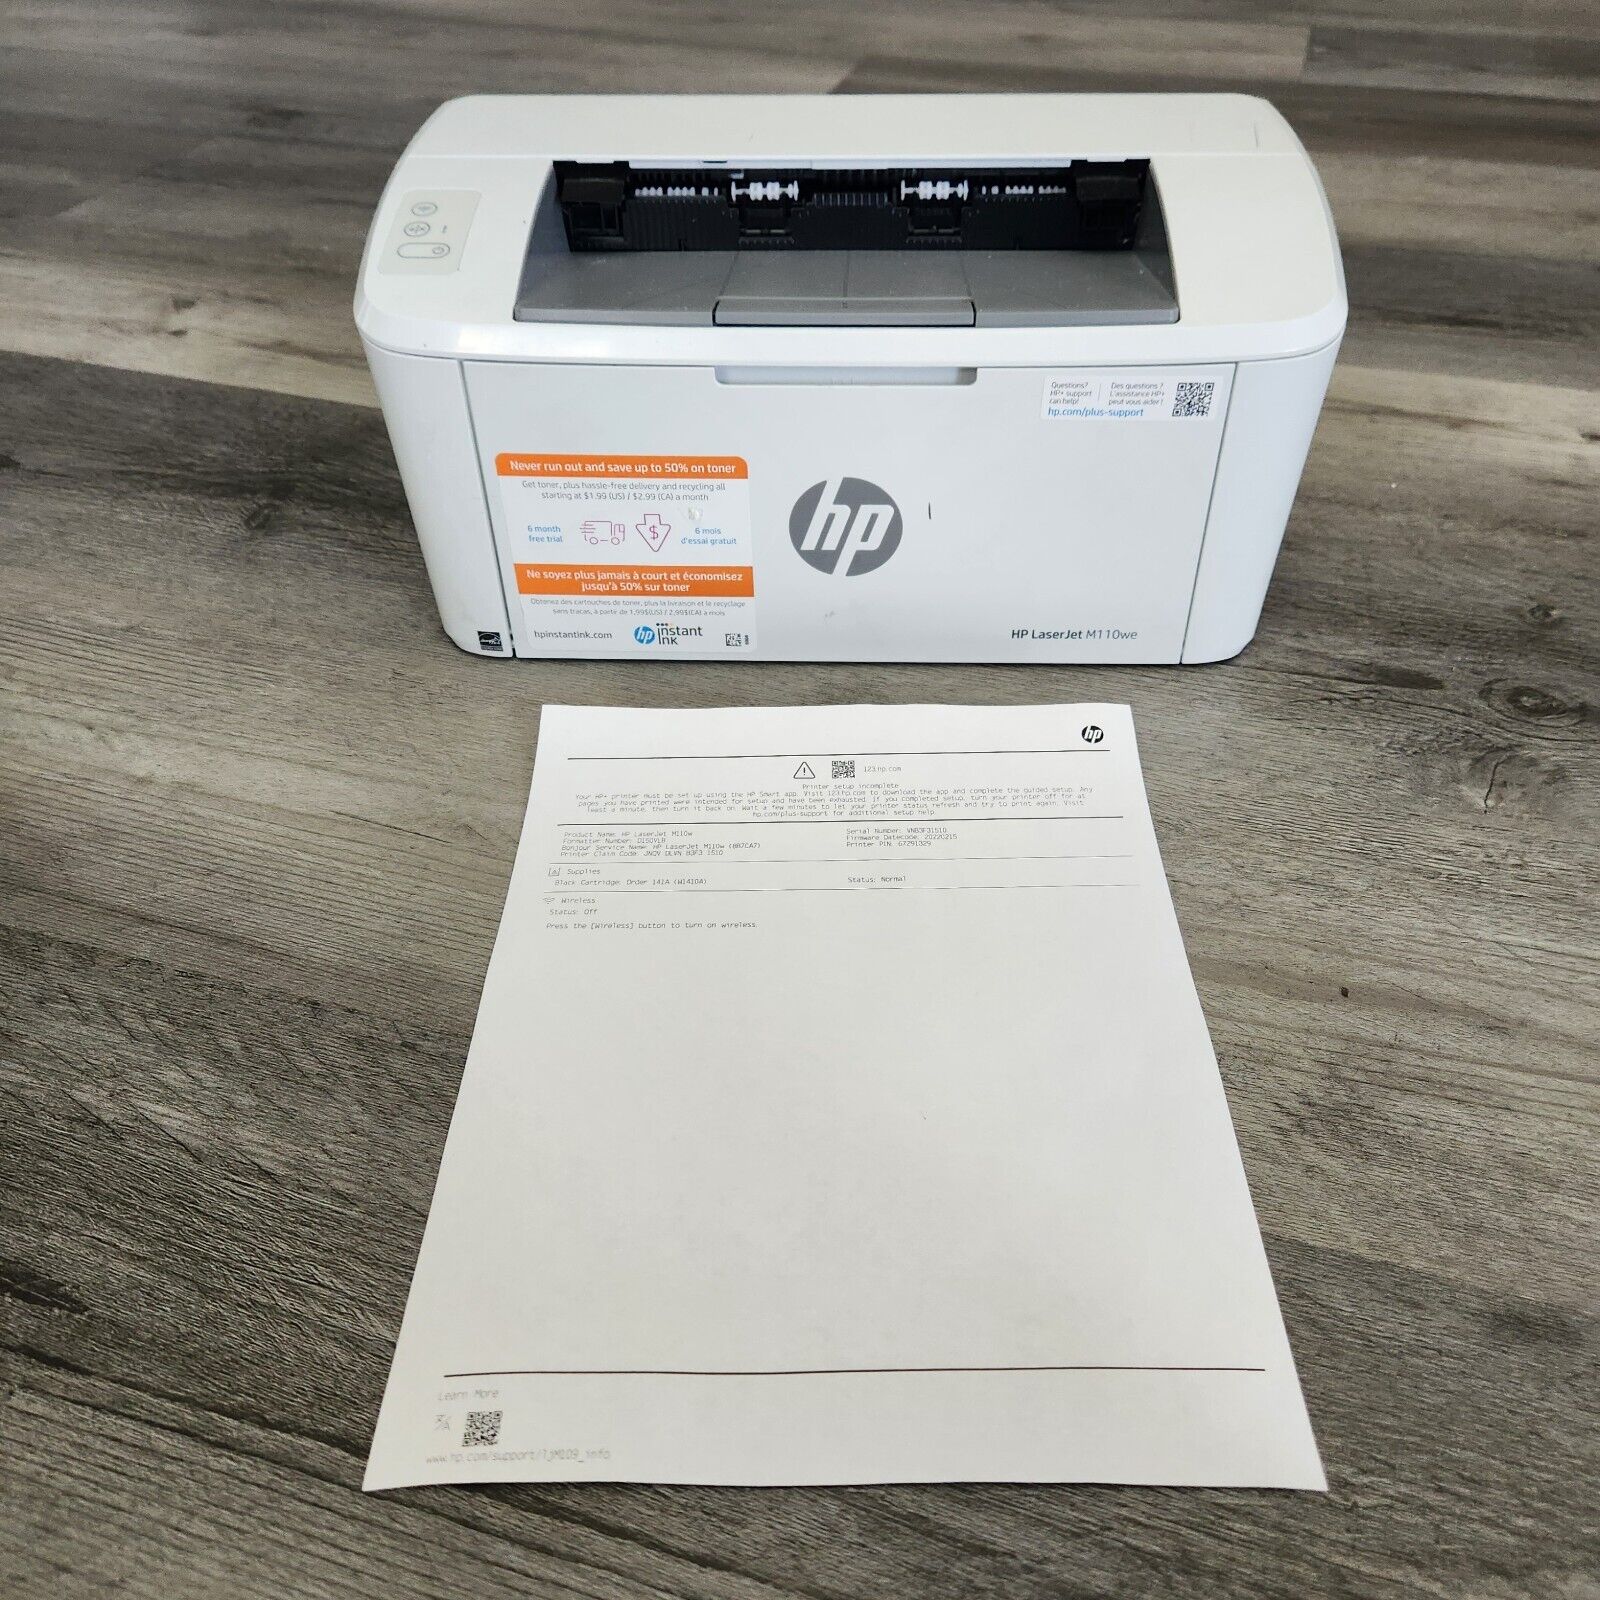 HP LaserJet M110we Monochrome Laser Printer Tested, Works Great